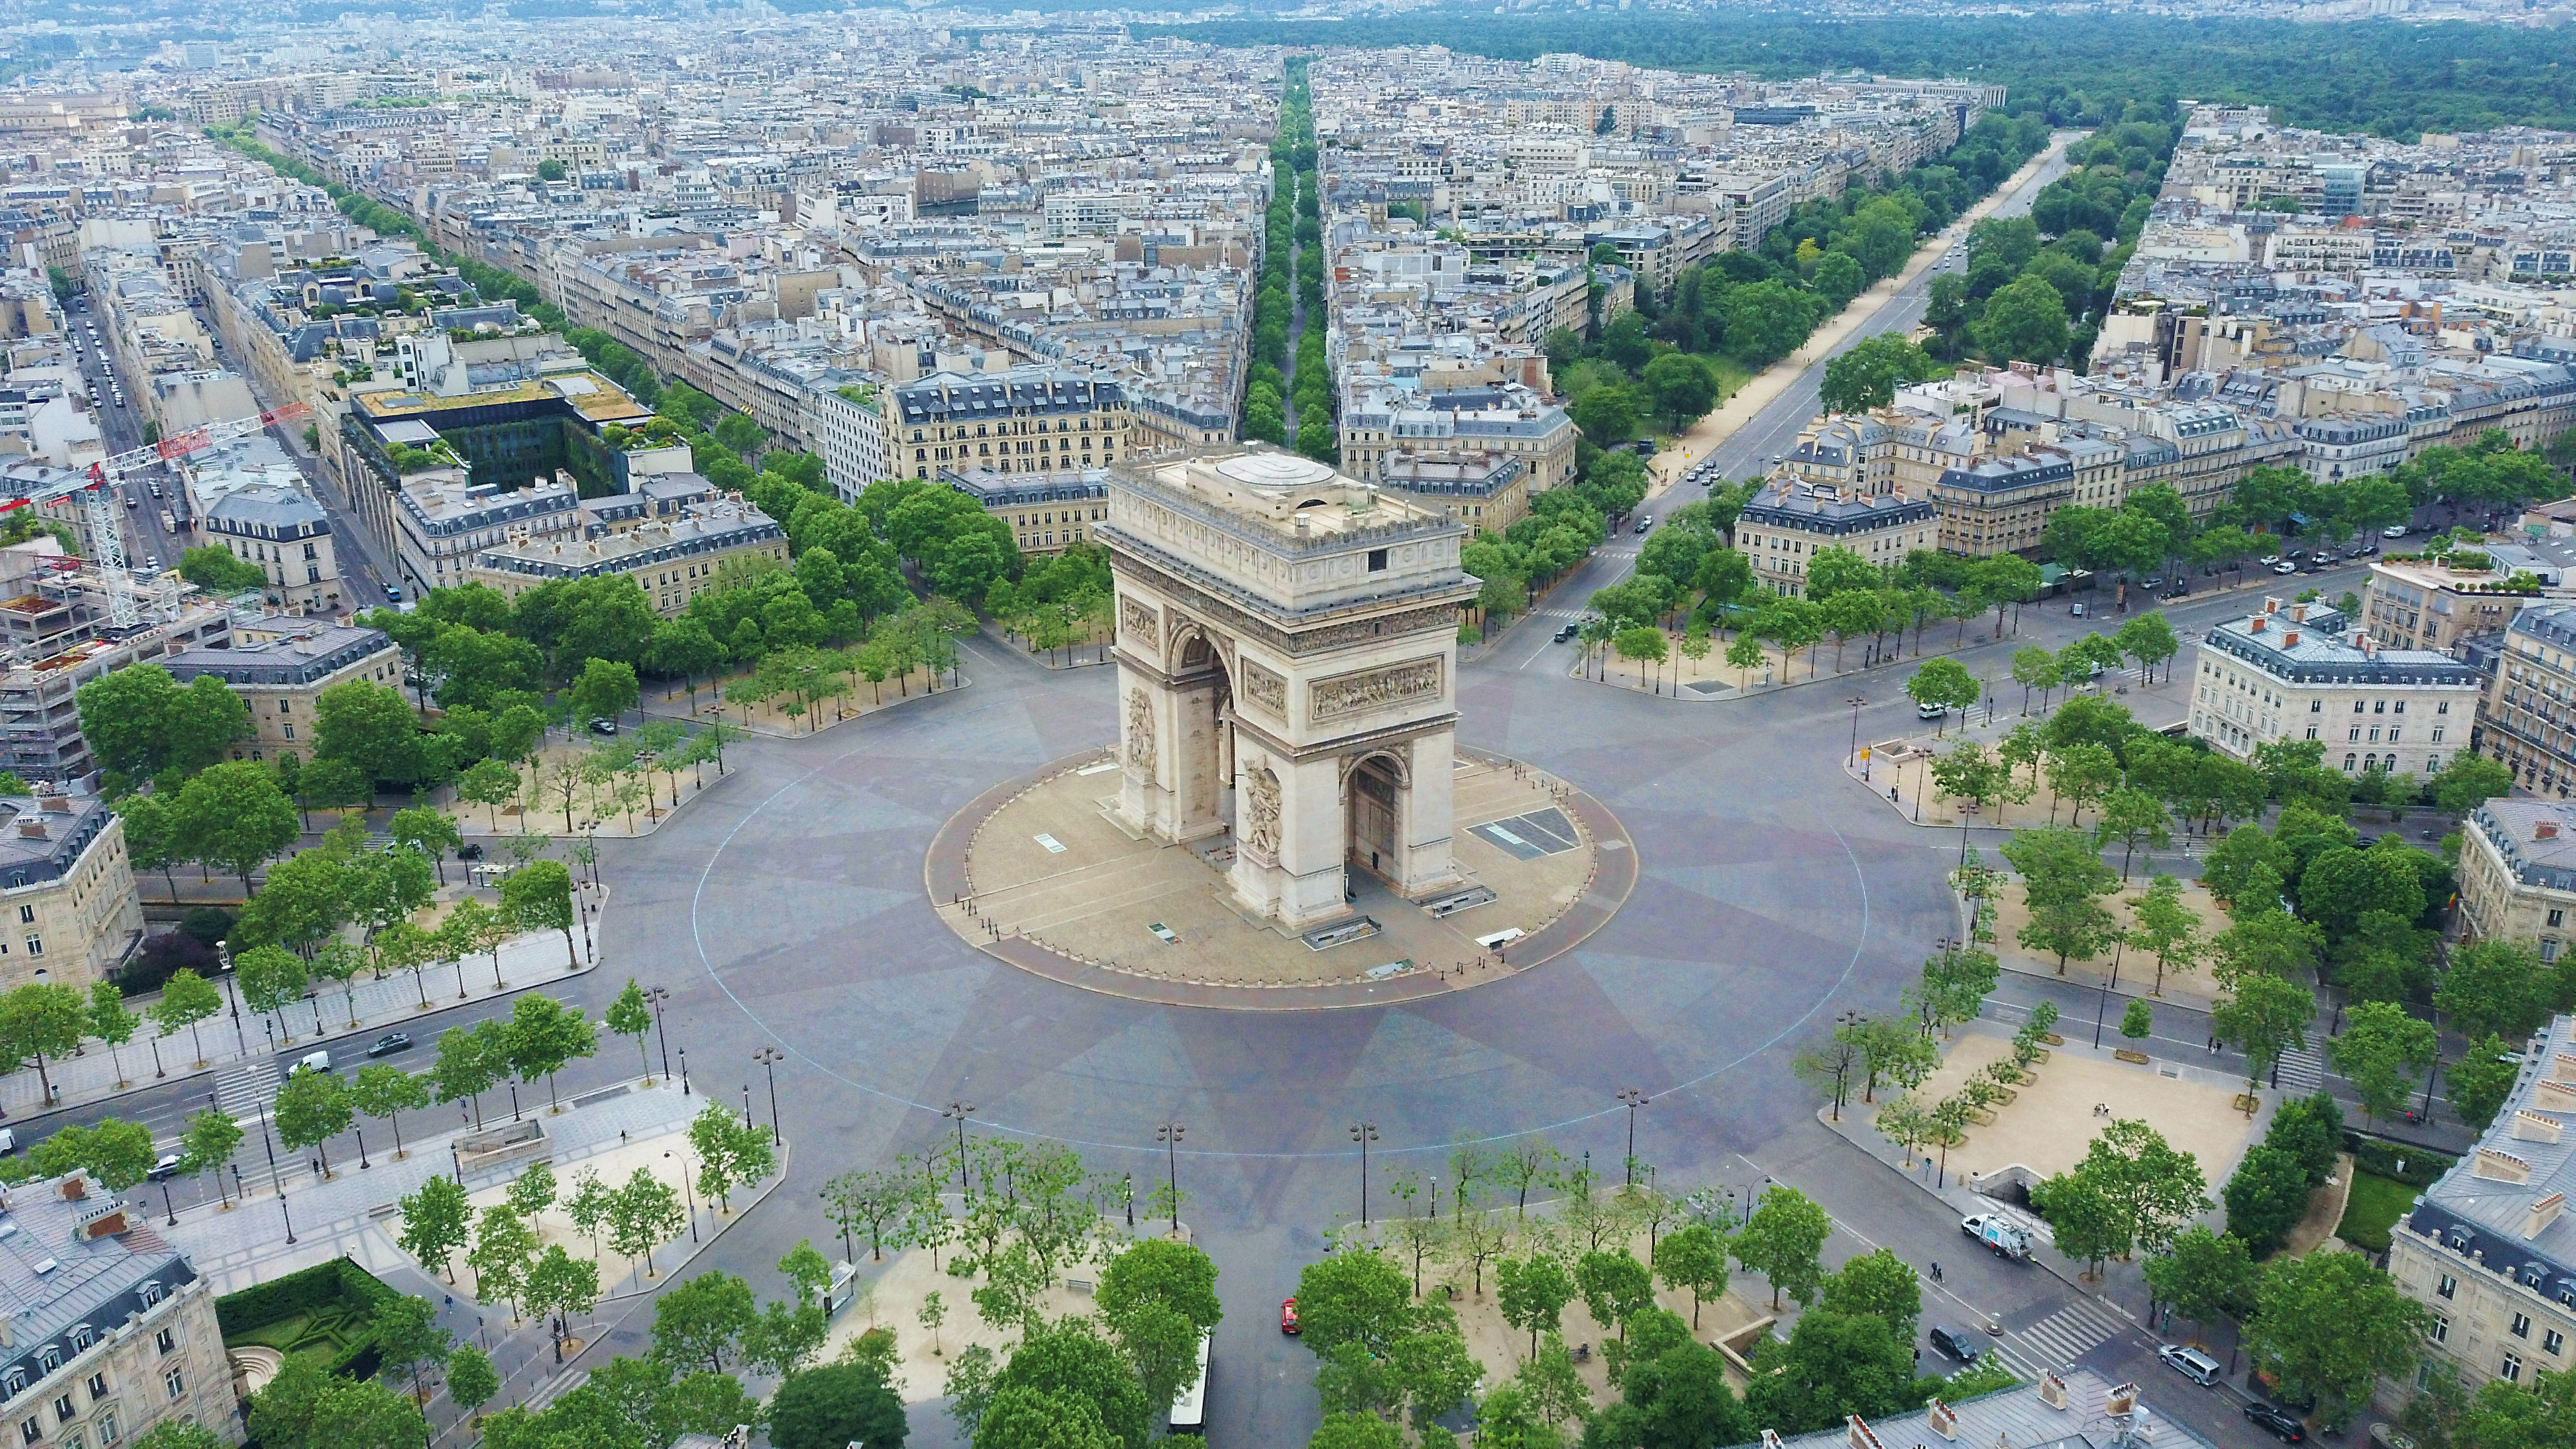 Центр Парижа, столицы Франции, страны, паспорт которой могут оформить иностранцы